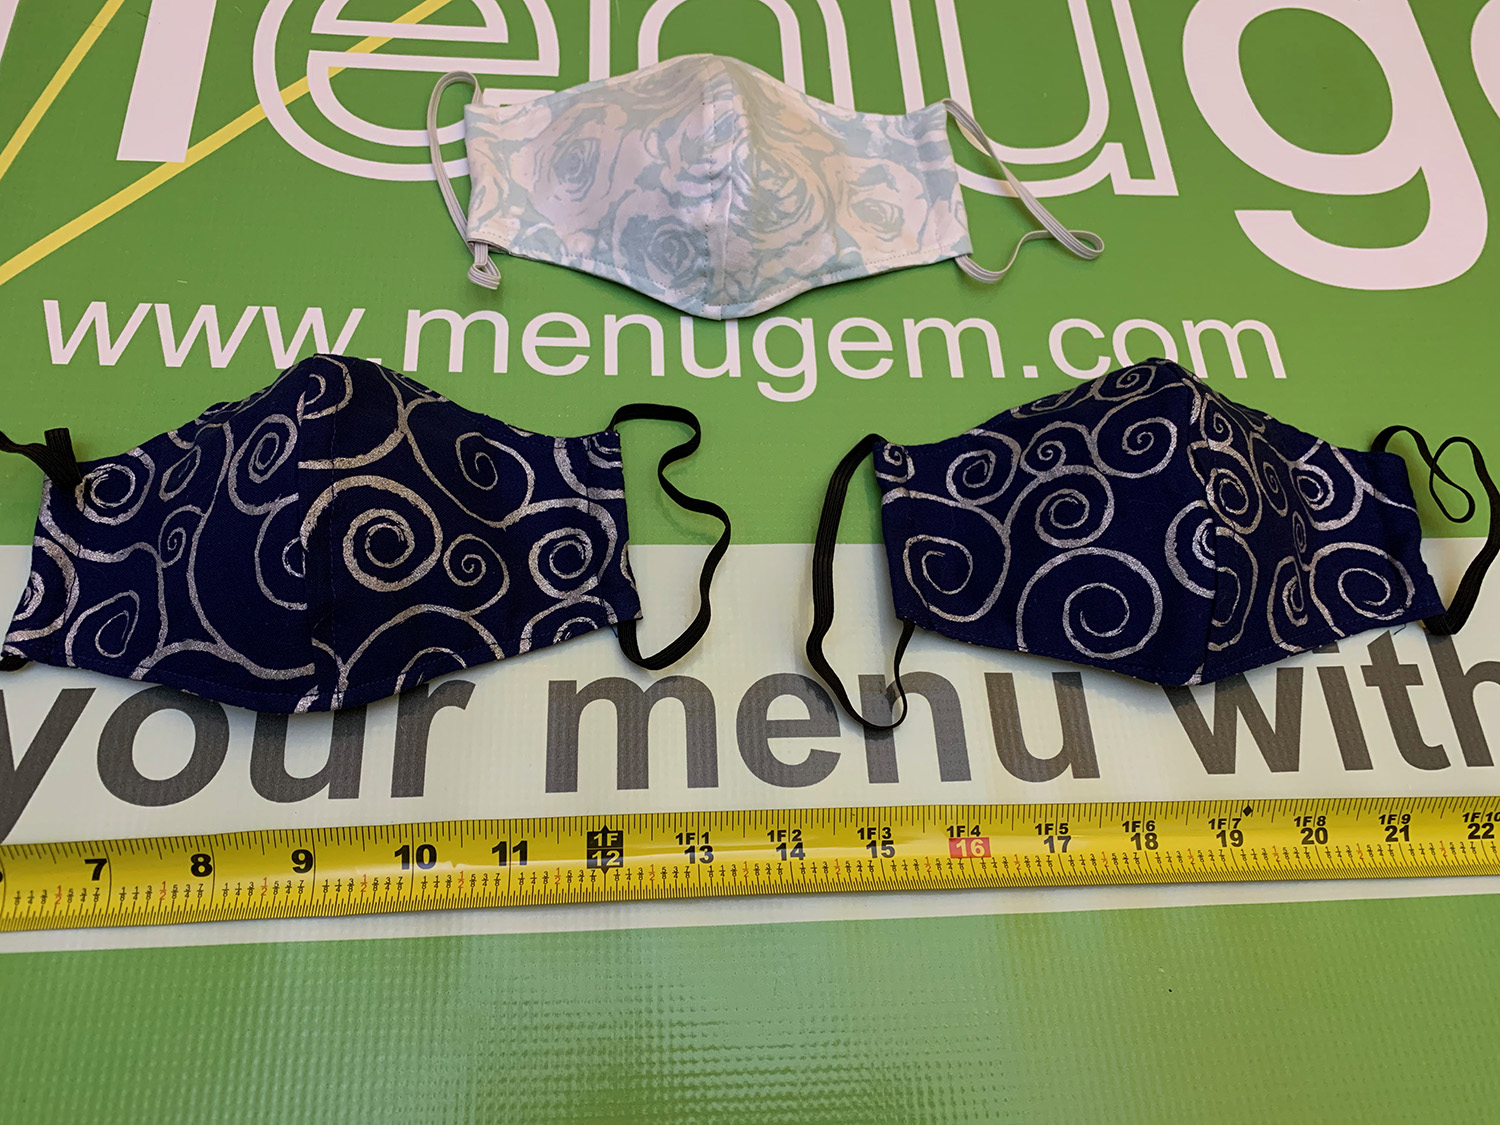 MenuGem Standard Mask 3 Pack - 2 Blue Silver Swirls 1 Floral